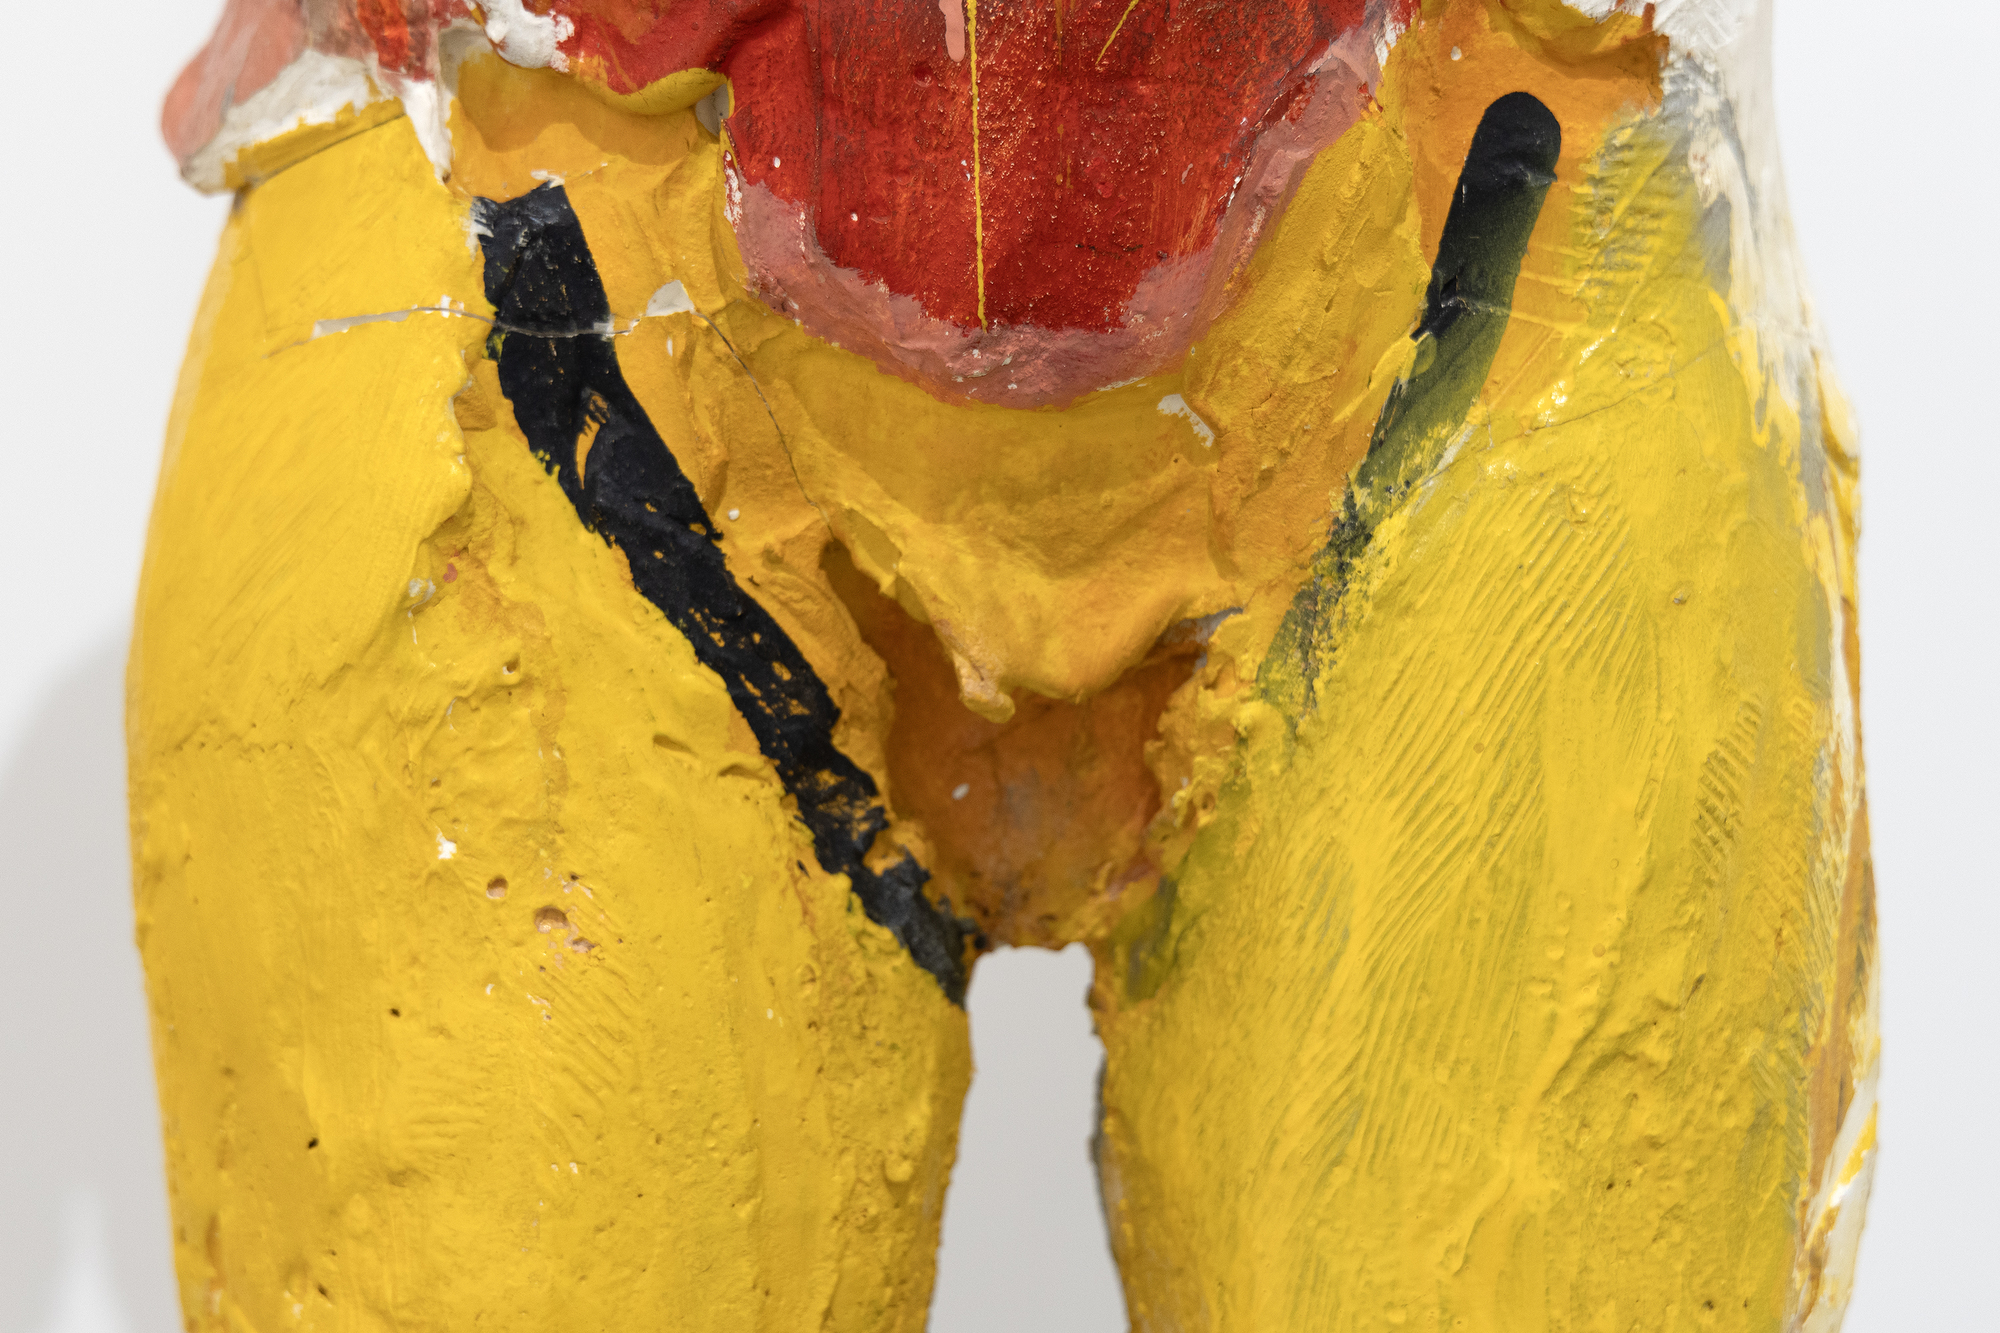 Manuel Neris frühe Pappmaché-Arbeiten waren bahnbrechend für die bildhauerische Technik, und seine Herangehensweise an die Bemalung seiner Skulpturen spiegelt seine tiefe Auseinandersetzung mit dem Ausdruckspotenzial von Farbe und Form wider. Die Wahl und Platzierung der Farben in Hombre Colorado II erzeugt eine besonders intensive Reaktion, die sein nuanciertes Verständnis der psychologischen und emotionalen Dimension von Farbe widerspiegelt. Das 1958 konzipierte und produzierte Werk Hombre Colorado II spiegelt eine Zeit wider, in der Neri und seine Frau Joan Brown in einem reichen künstlerischen Austausch standen und maßgeblich zur Entwicklung ihres jeweiligen Stils und der figurativen Bewegung der Bay Area beitrugen, in der sie eine wichtige Rolle spielten.